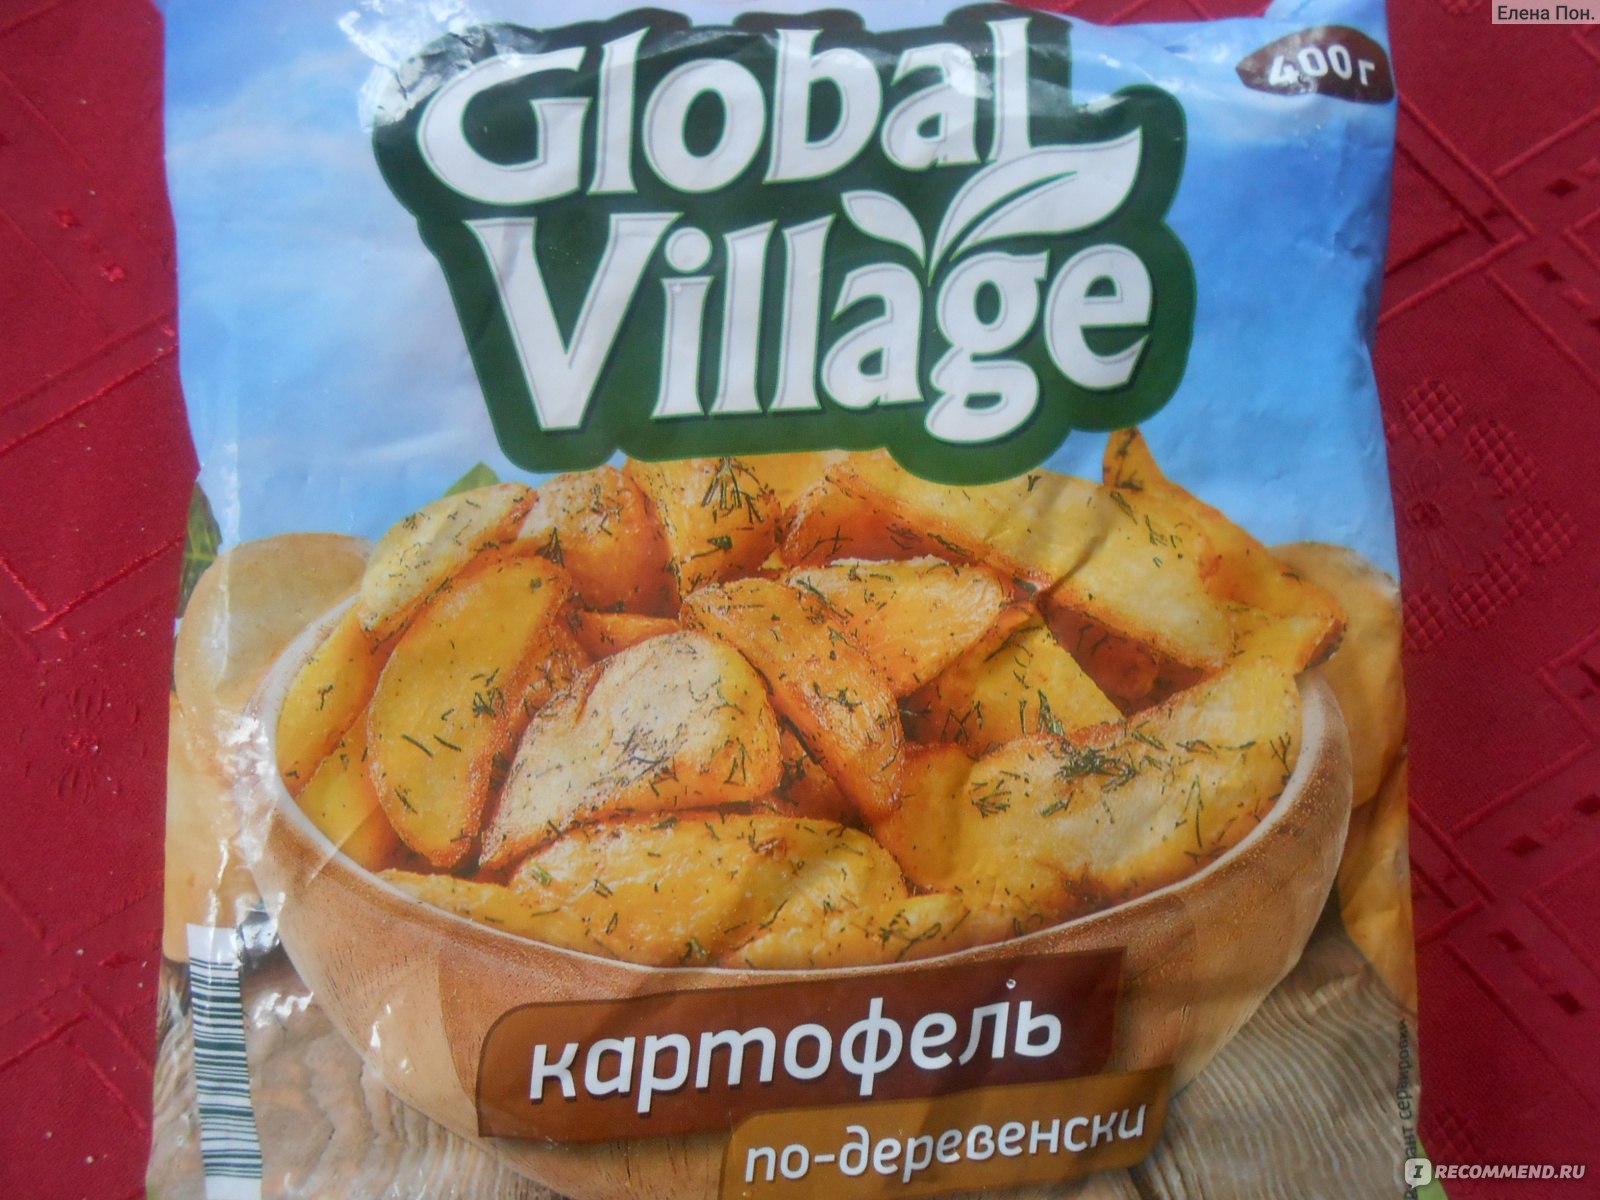 Global village овощи. Картошка Глобал Виладж. Картошка по деревенски Глобал Виладж. Global Village картофель по деревенски.